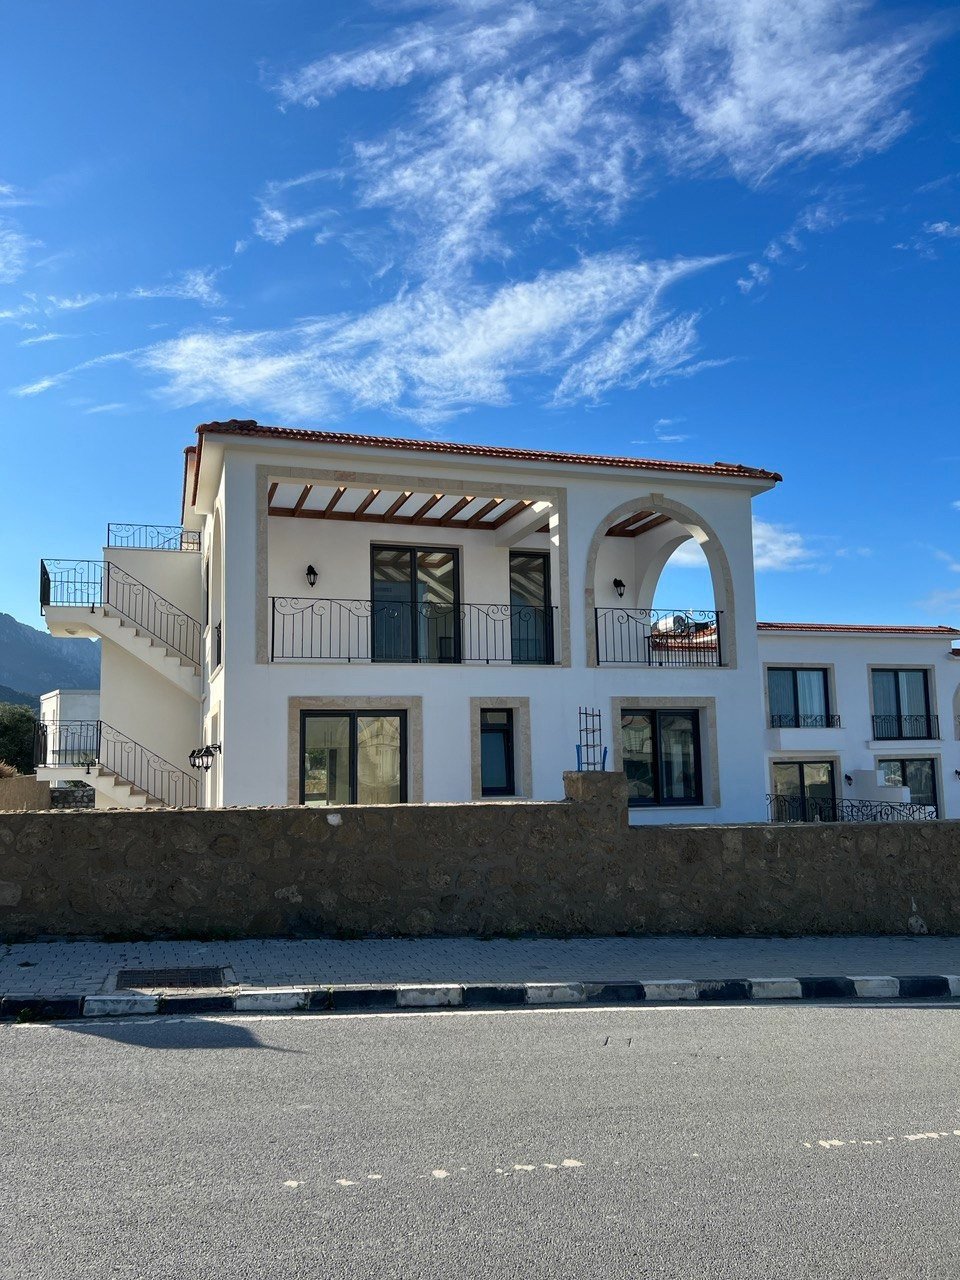 2 Bedroom Townhouse for sale in Kyrenia,Alsancak-43ae87a8-e968-435c-b98d-e3e7daa65076